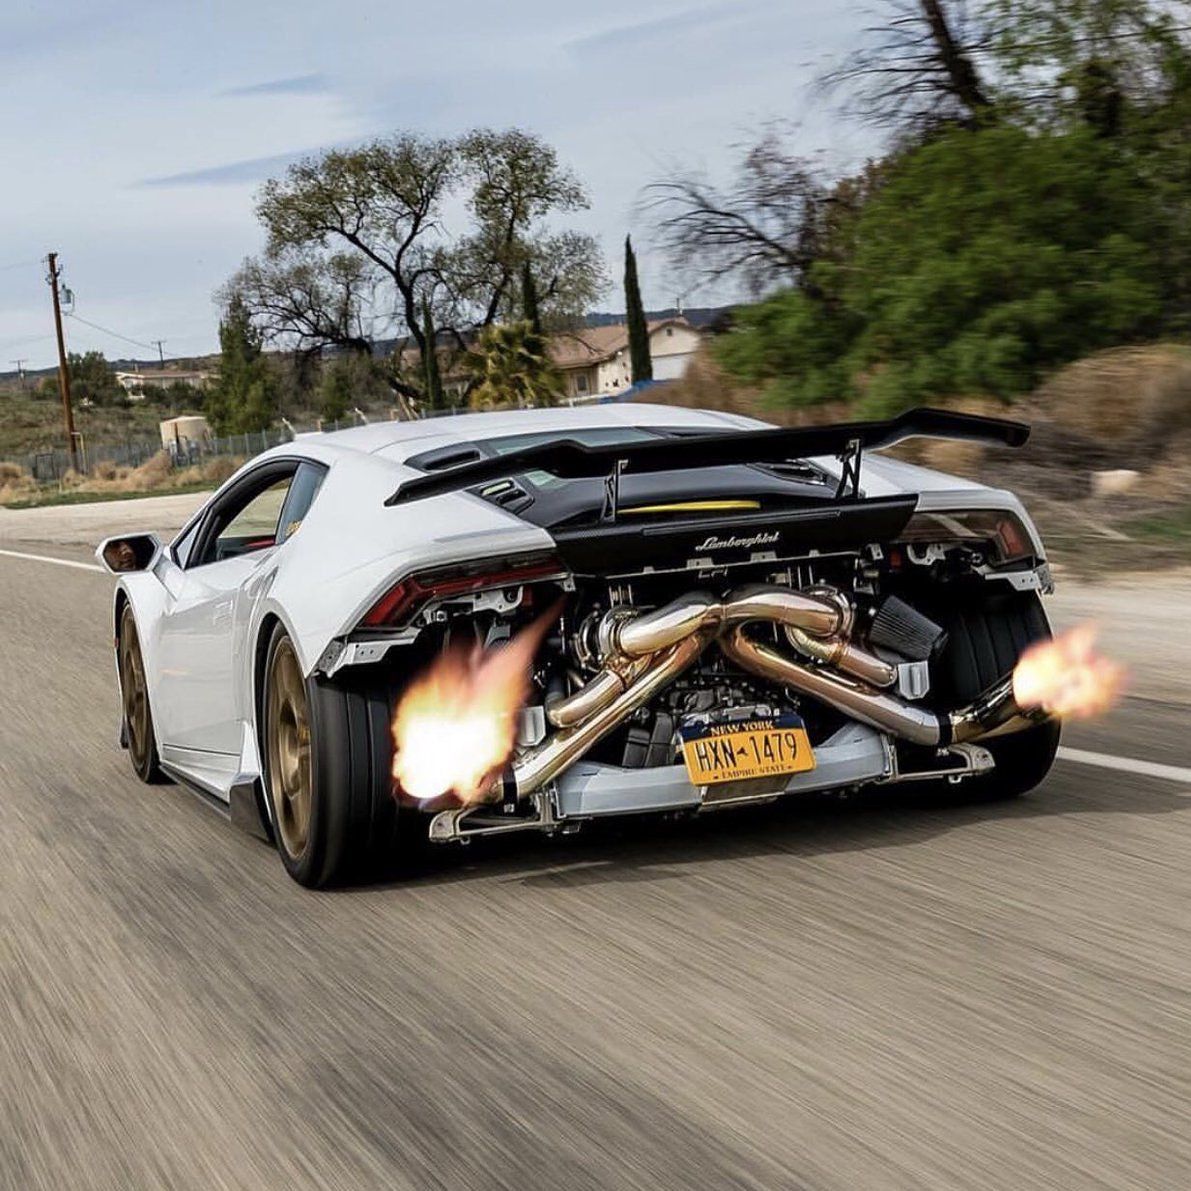 Lamborghini - #Lamborghini #Huracán #Fire #Shoot #Bomb #White Wallpaper #Drive #Race #Super #Flame #Sport #Car #Racer #Driving #Show #HD #Explosive #Running #Bull #Ferrari #Fast #Nice #Amazing #Photo #Photograph #Life #Style #